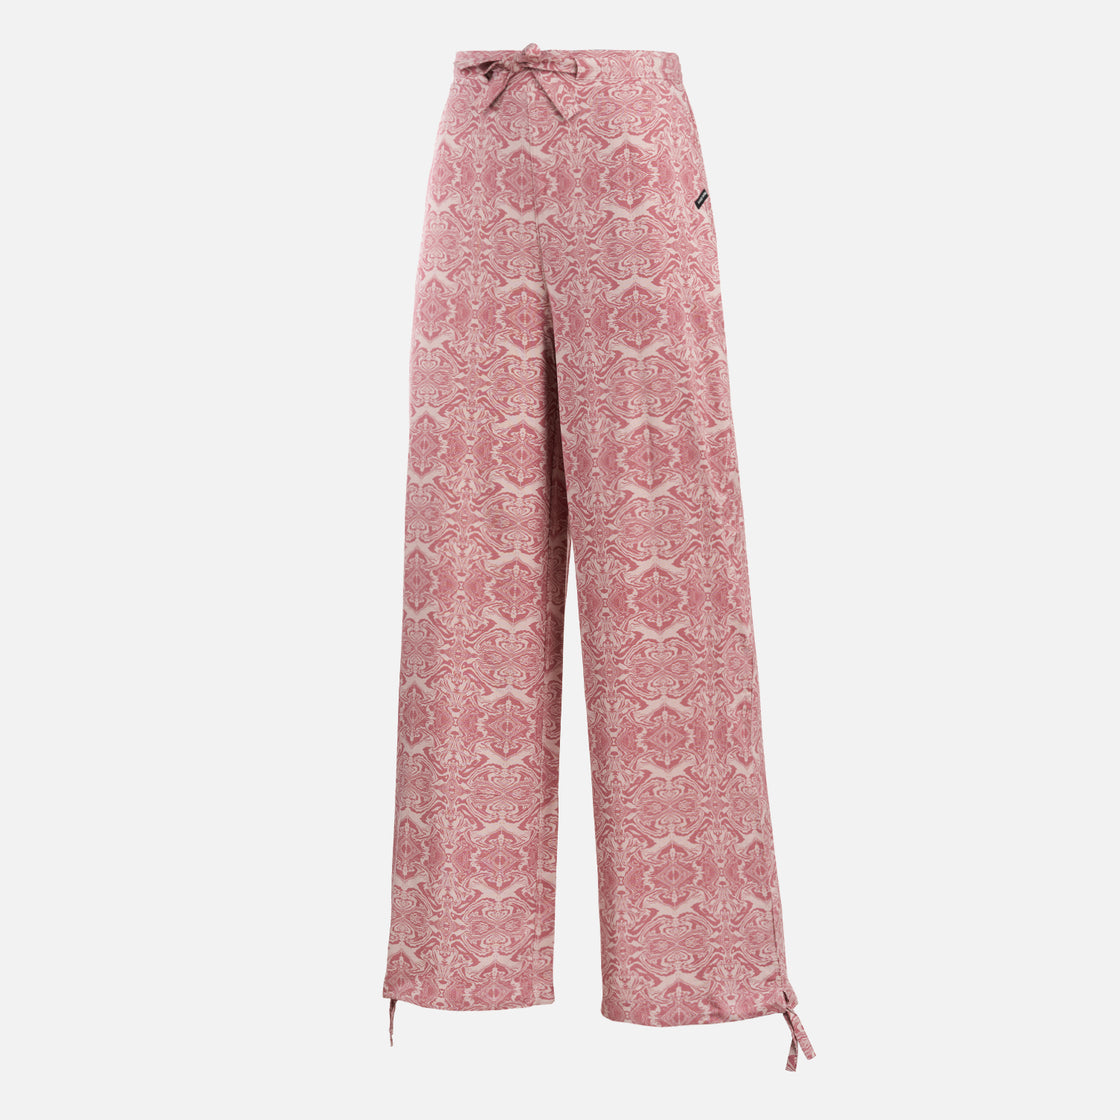 Pantalon Mujer Jipon Print Rosado Haka Honu